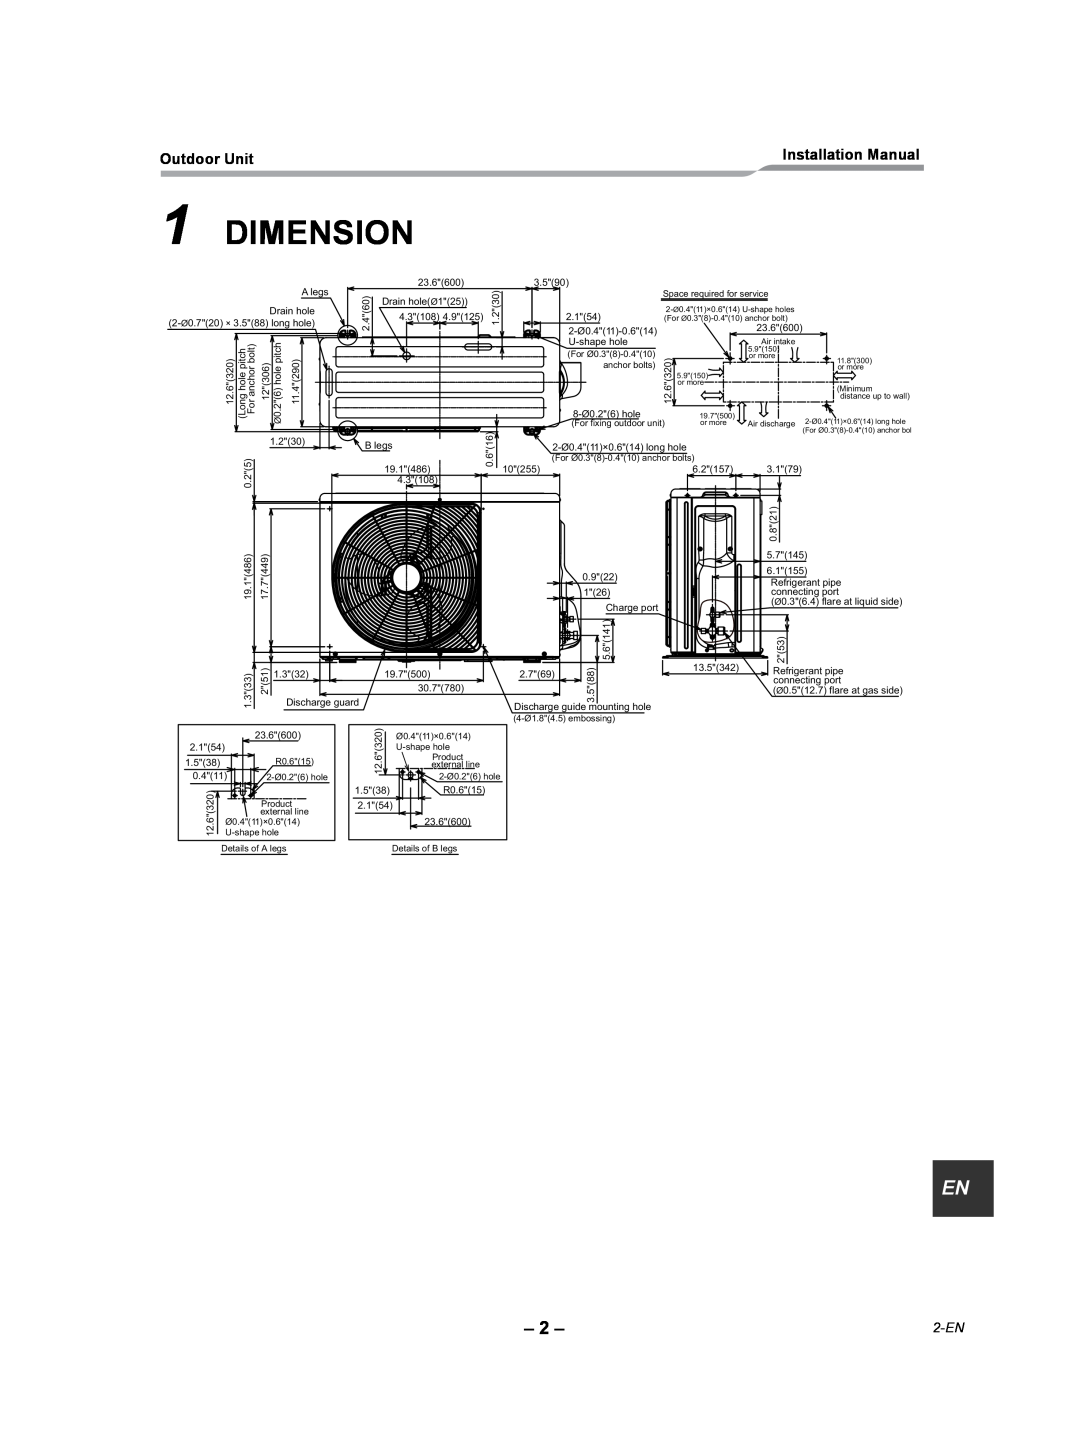 Toshiba RAV-SP180AT2-UL installation manual Dimension, 2-EN 